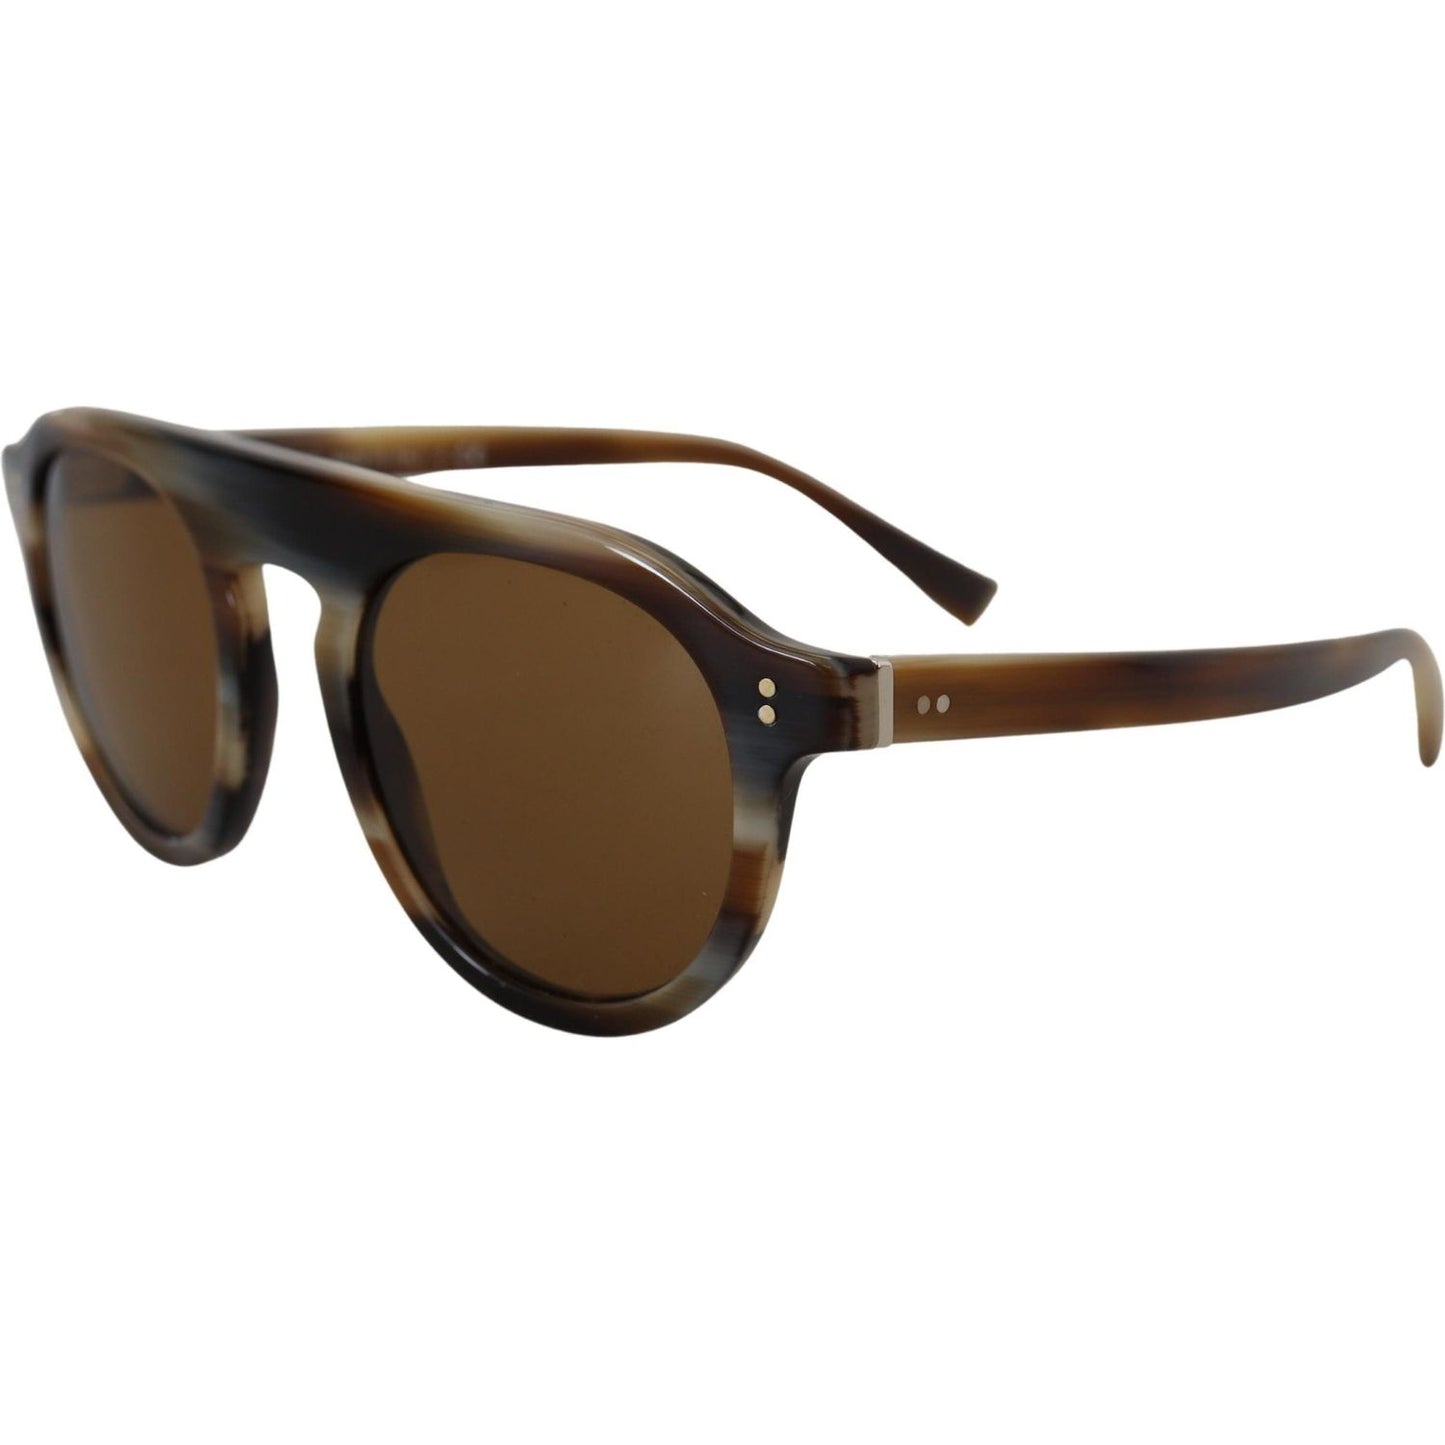 Dolce & Gabbana Timeless Tortoiseshell Unisex Sunglasses brown-tortoise-oval-full-rim-eyewear-dg4306-sunglasses